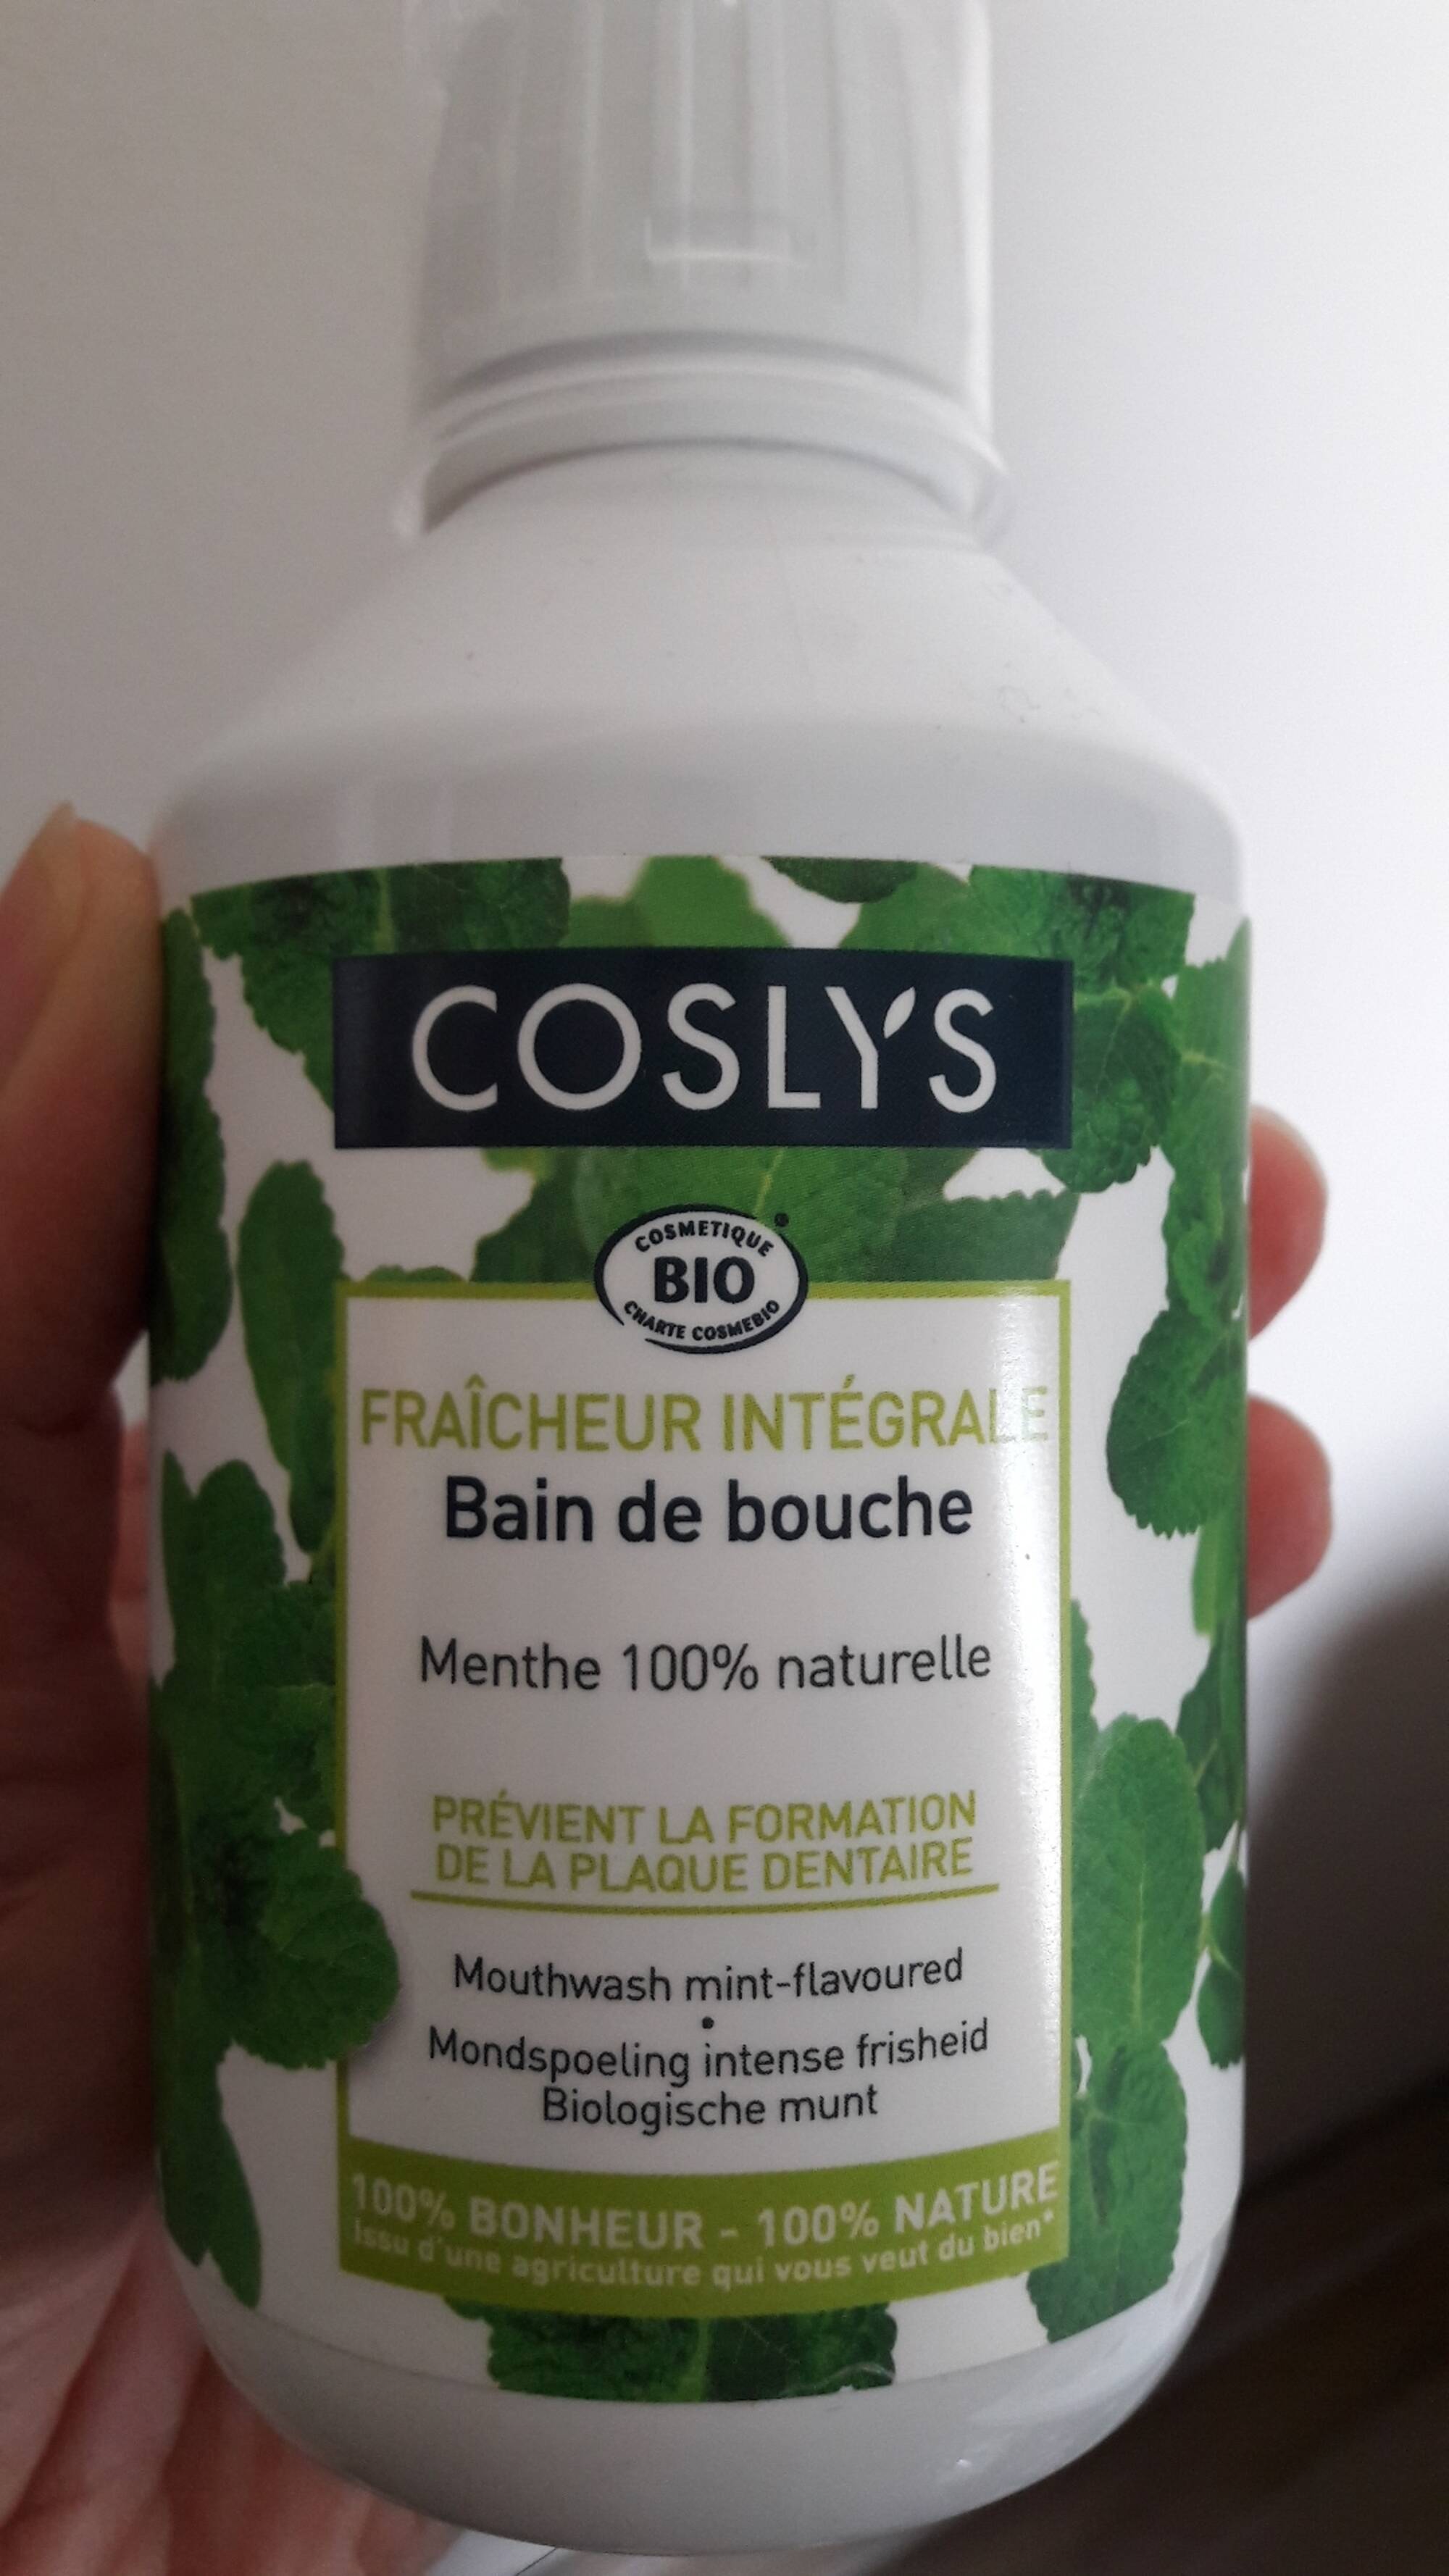 COSLYS - Fraîcheur intégrale - Bain de bouche